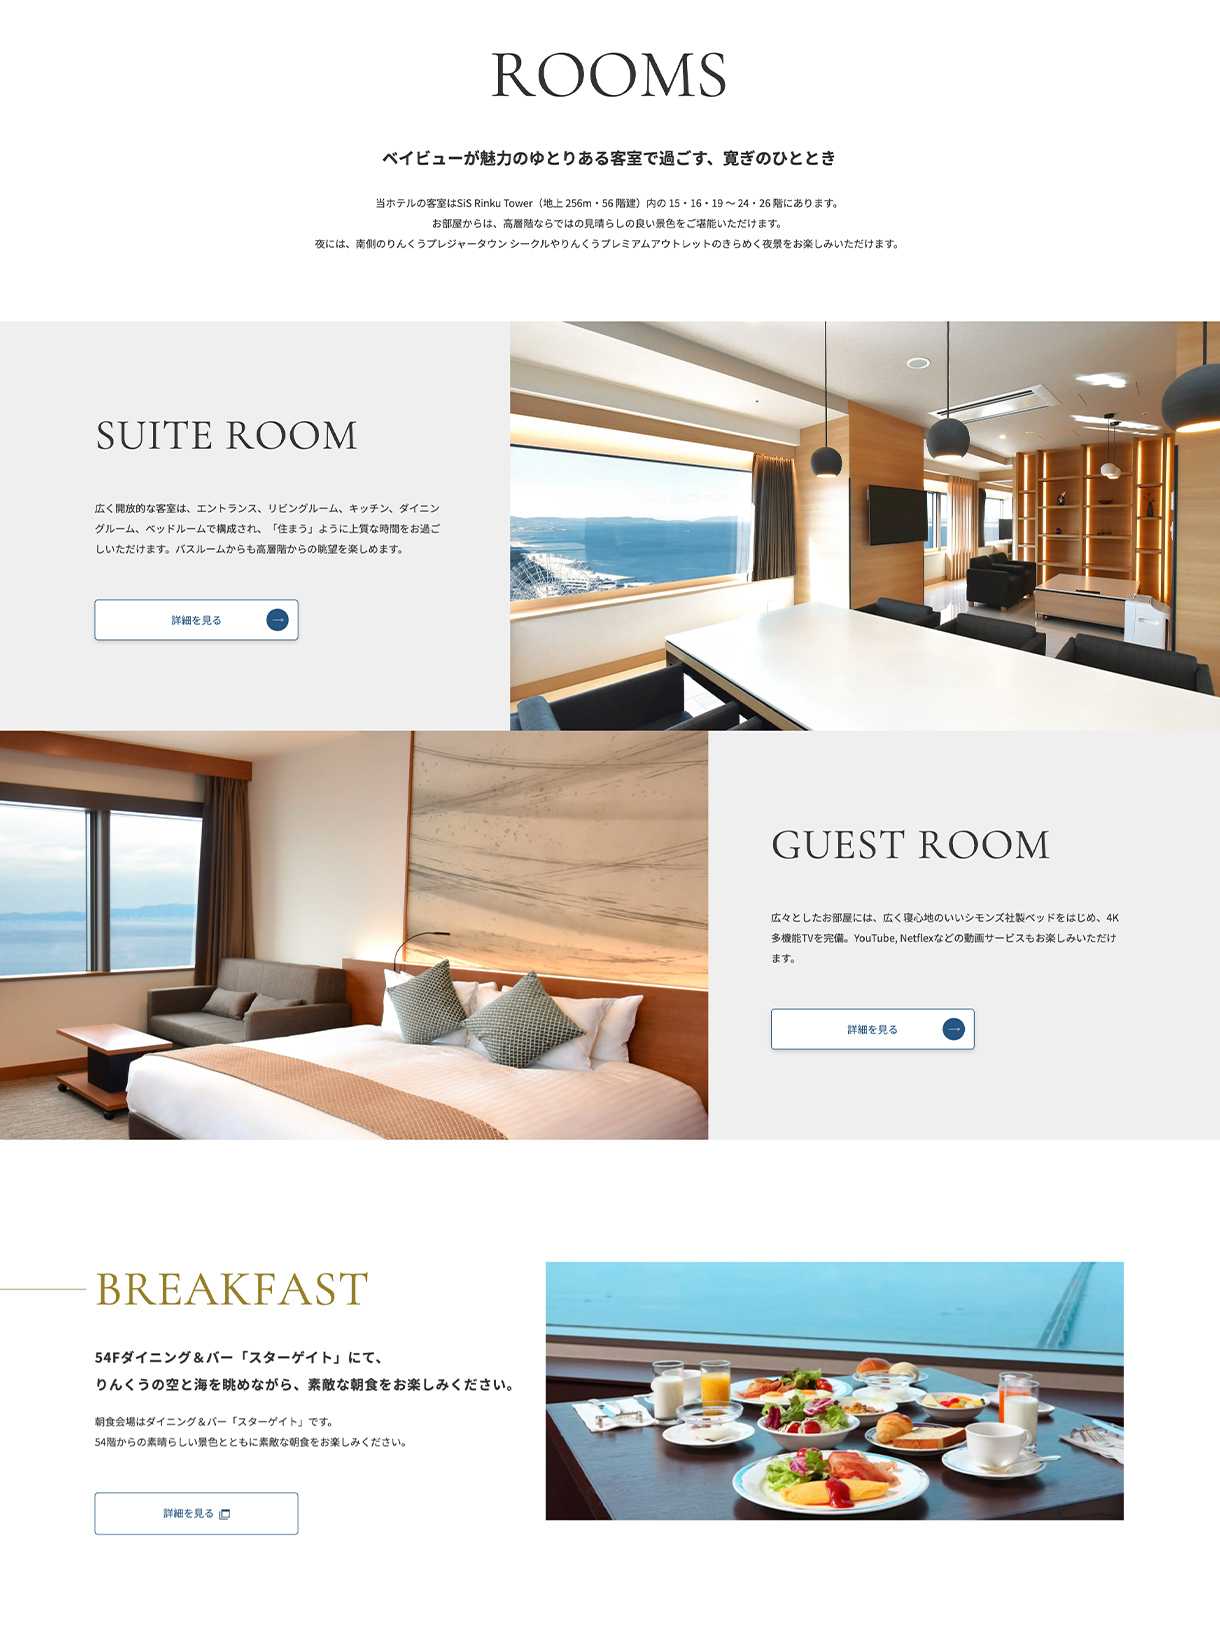 オディシススイーツ大阪エアポートホテルwebサイトの客室ページ画像